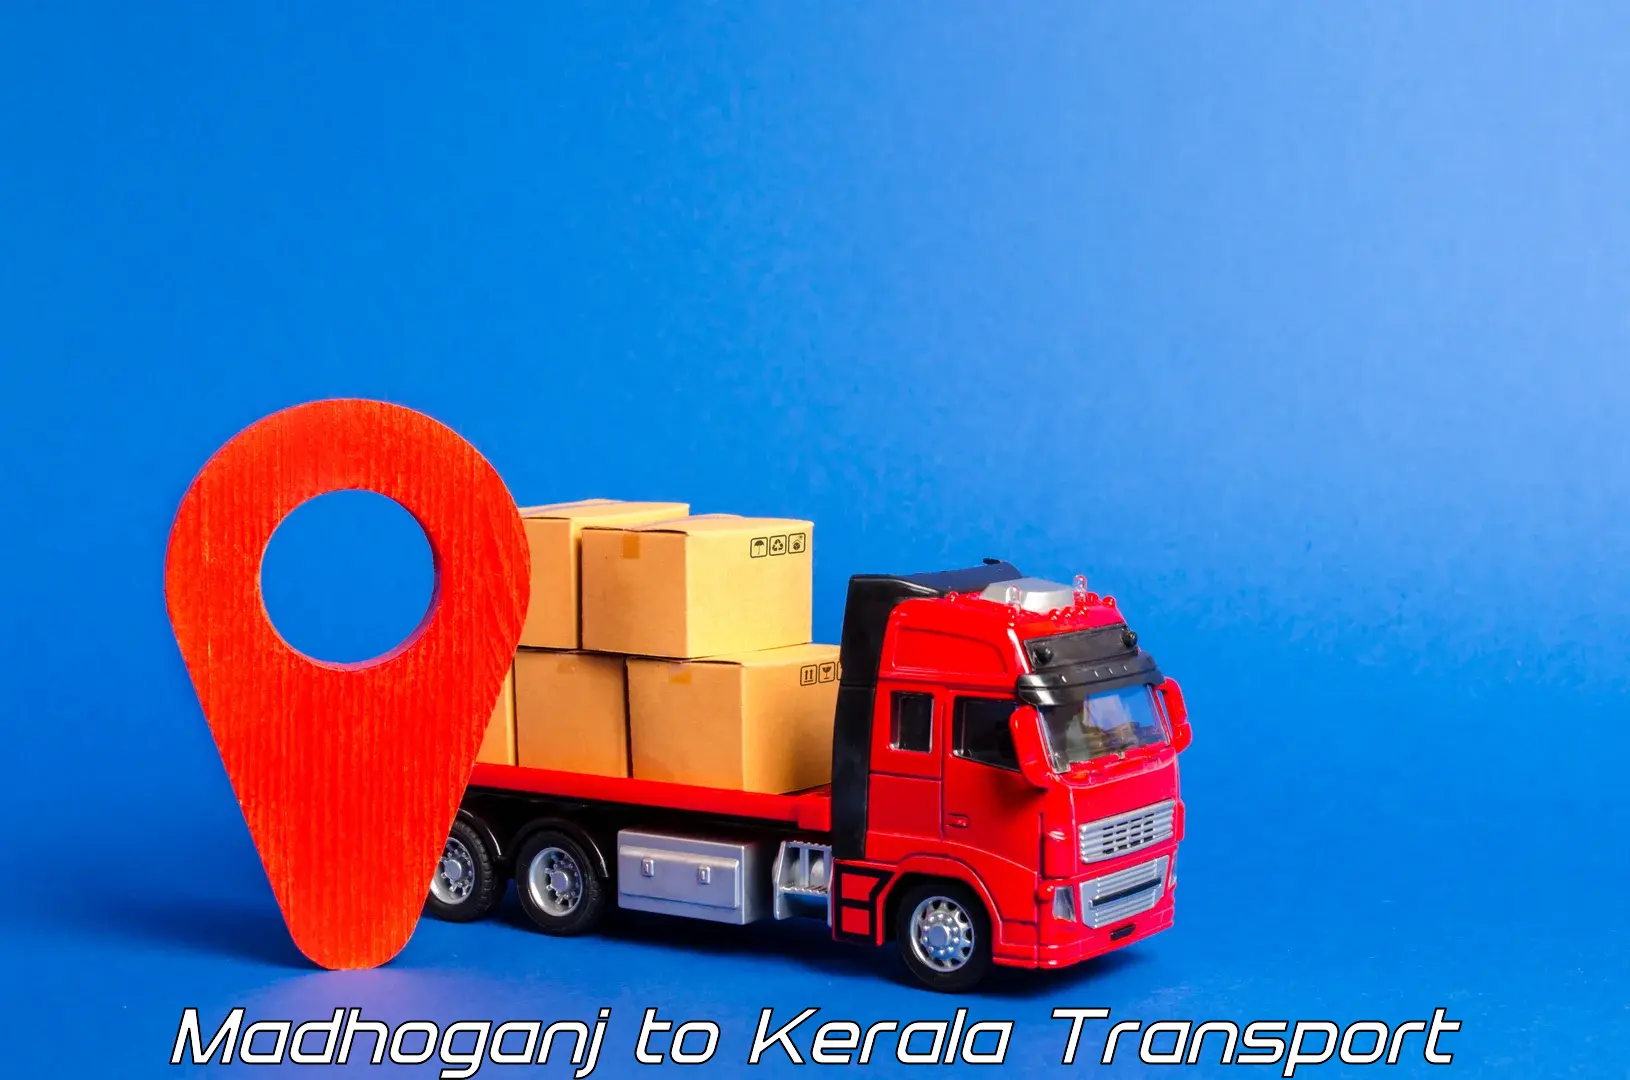 Two wheeler parcel service Madhoganj to Kothamangalam